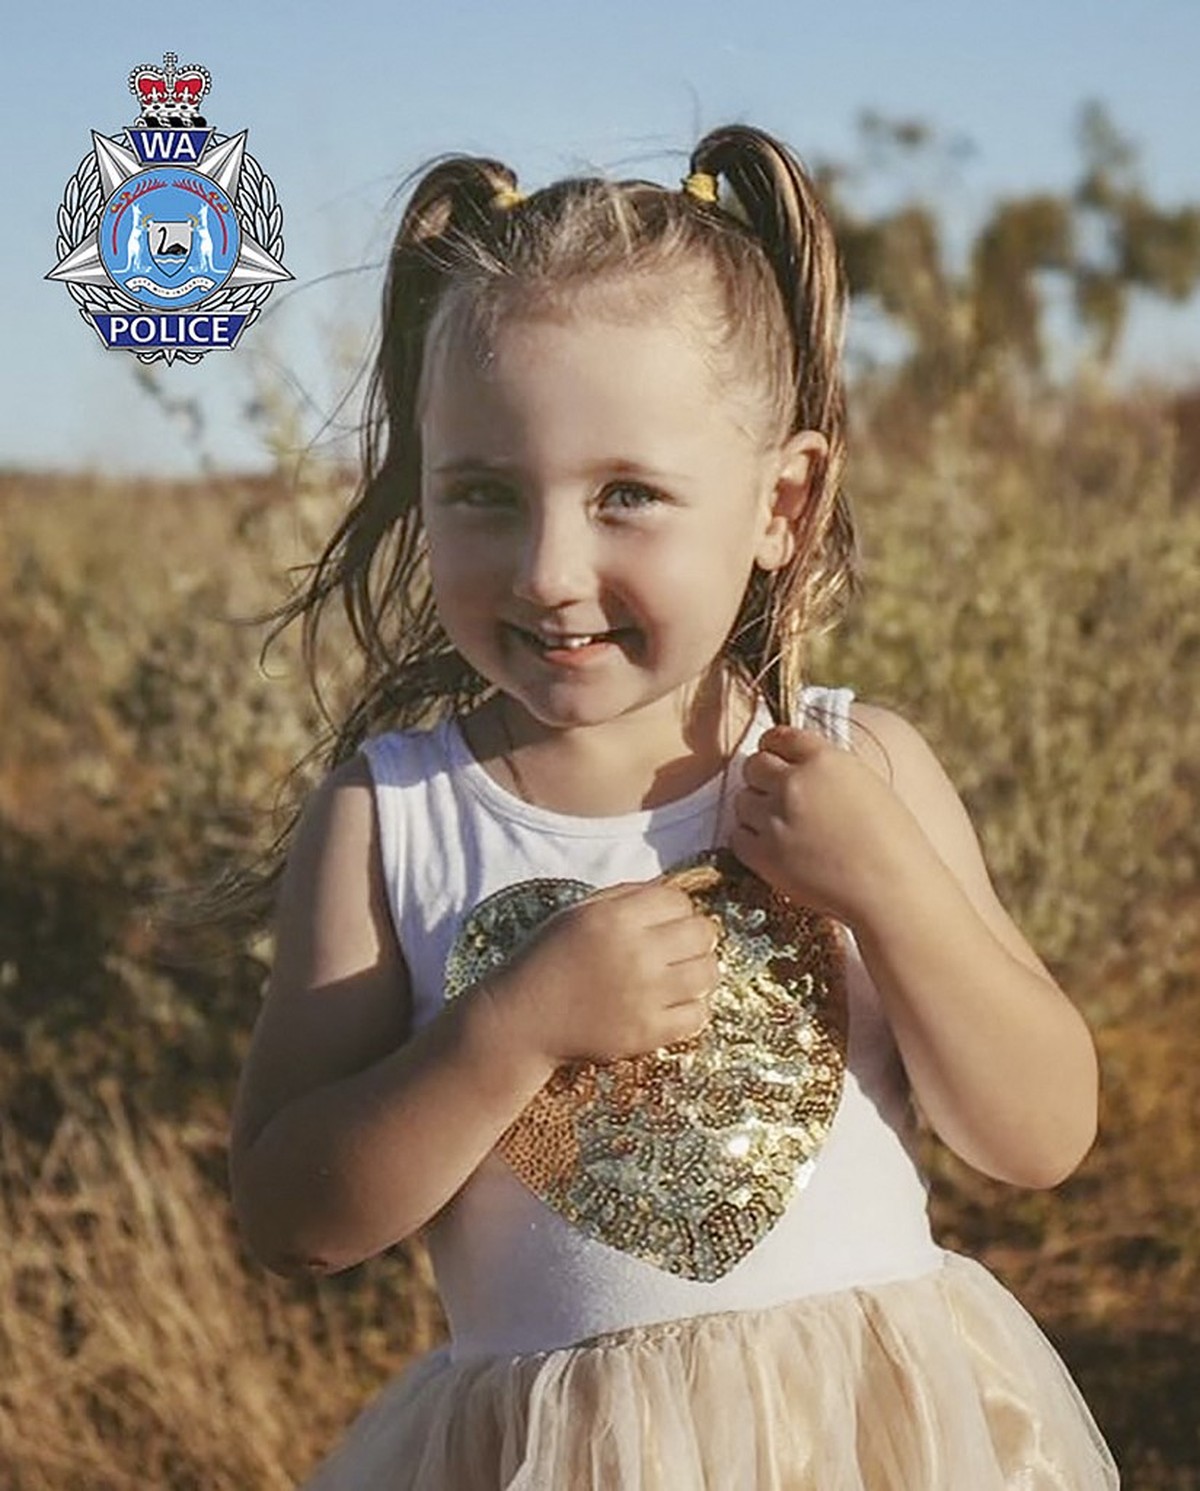 Polícia Da Austrália Oferece R 42 Milhões Por Informações Sobre Garota De 4 Anos Que Está